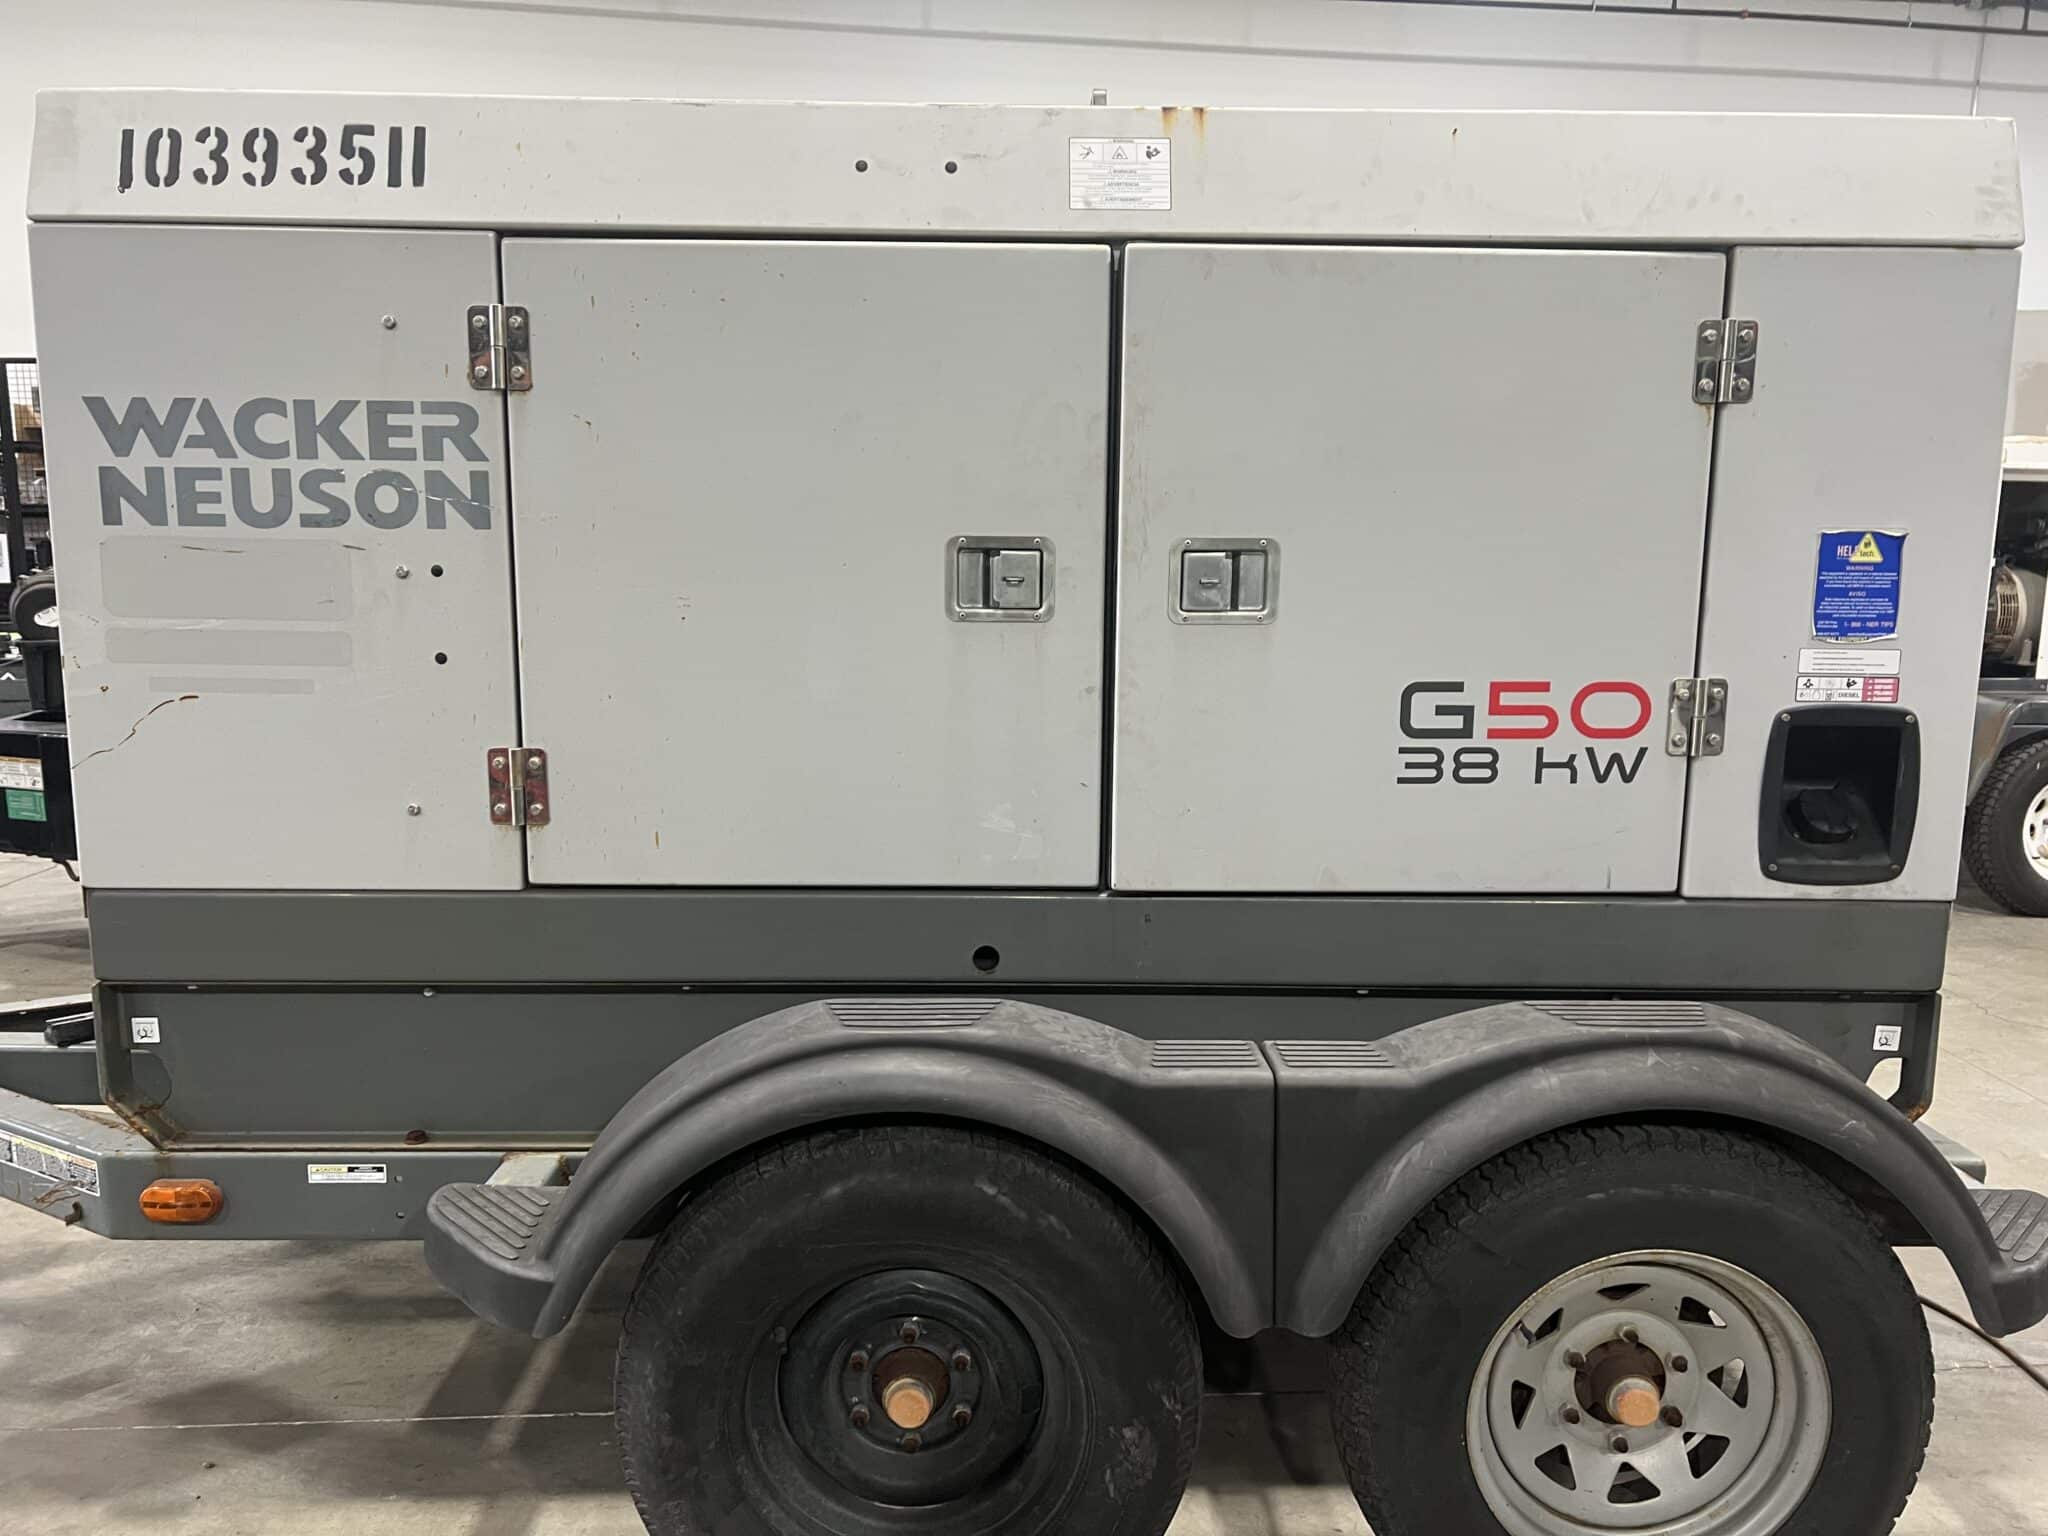 Used 38 kW Wacker Neuson G50 Portable Diesel Generator – EPA Tier 4 – JUST IN!